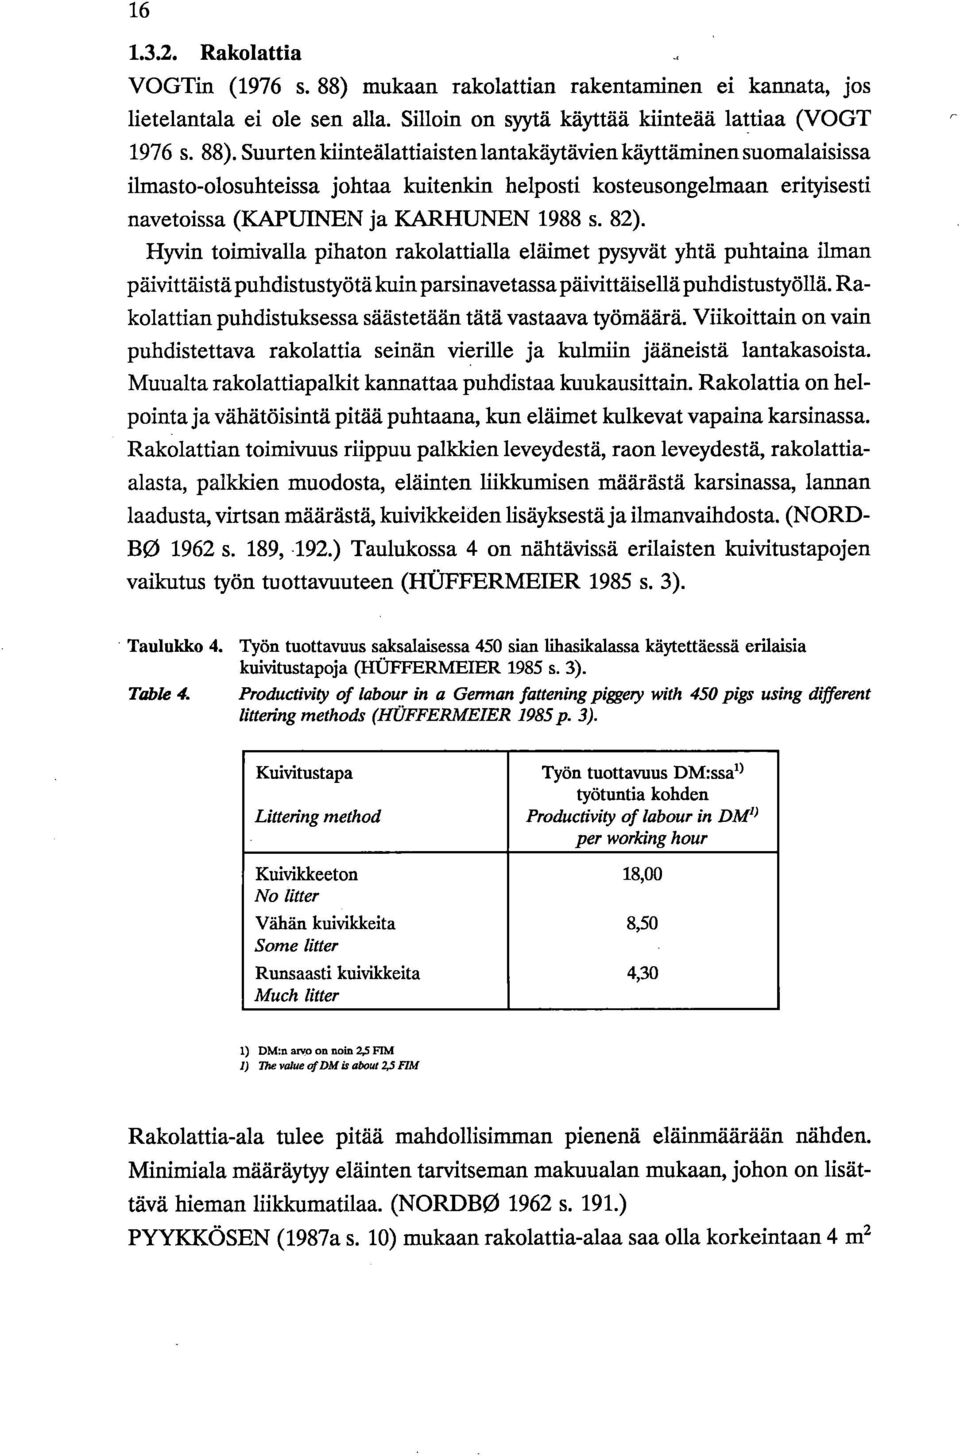 Suurten ldinteälattiaisten lantakäytävien käyttäminen suomalaisissa ilmasto-olosuhteissa johtaa kuitenkin helposti kosteusongelmaan erityisesti navetoissa (KAPUINEN ja KARHUNEN 1988 s. 82).